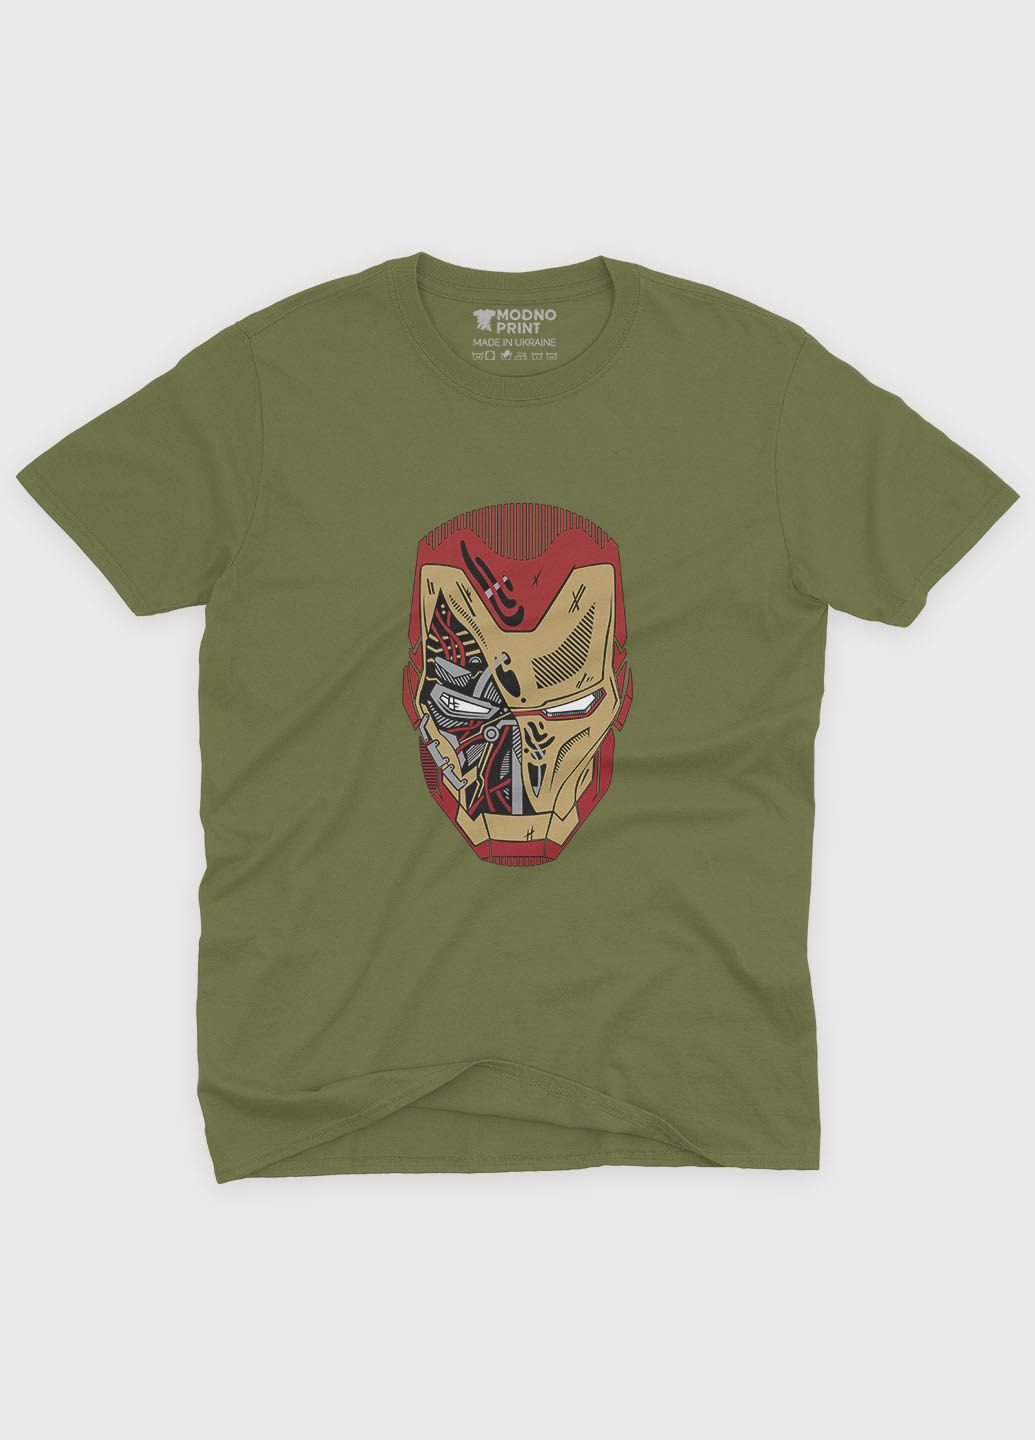 Хаки (оливковая) мужская футболка с принтом супергероя - железный человек (ts001-1-hgr-006-016-016) Modno